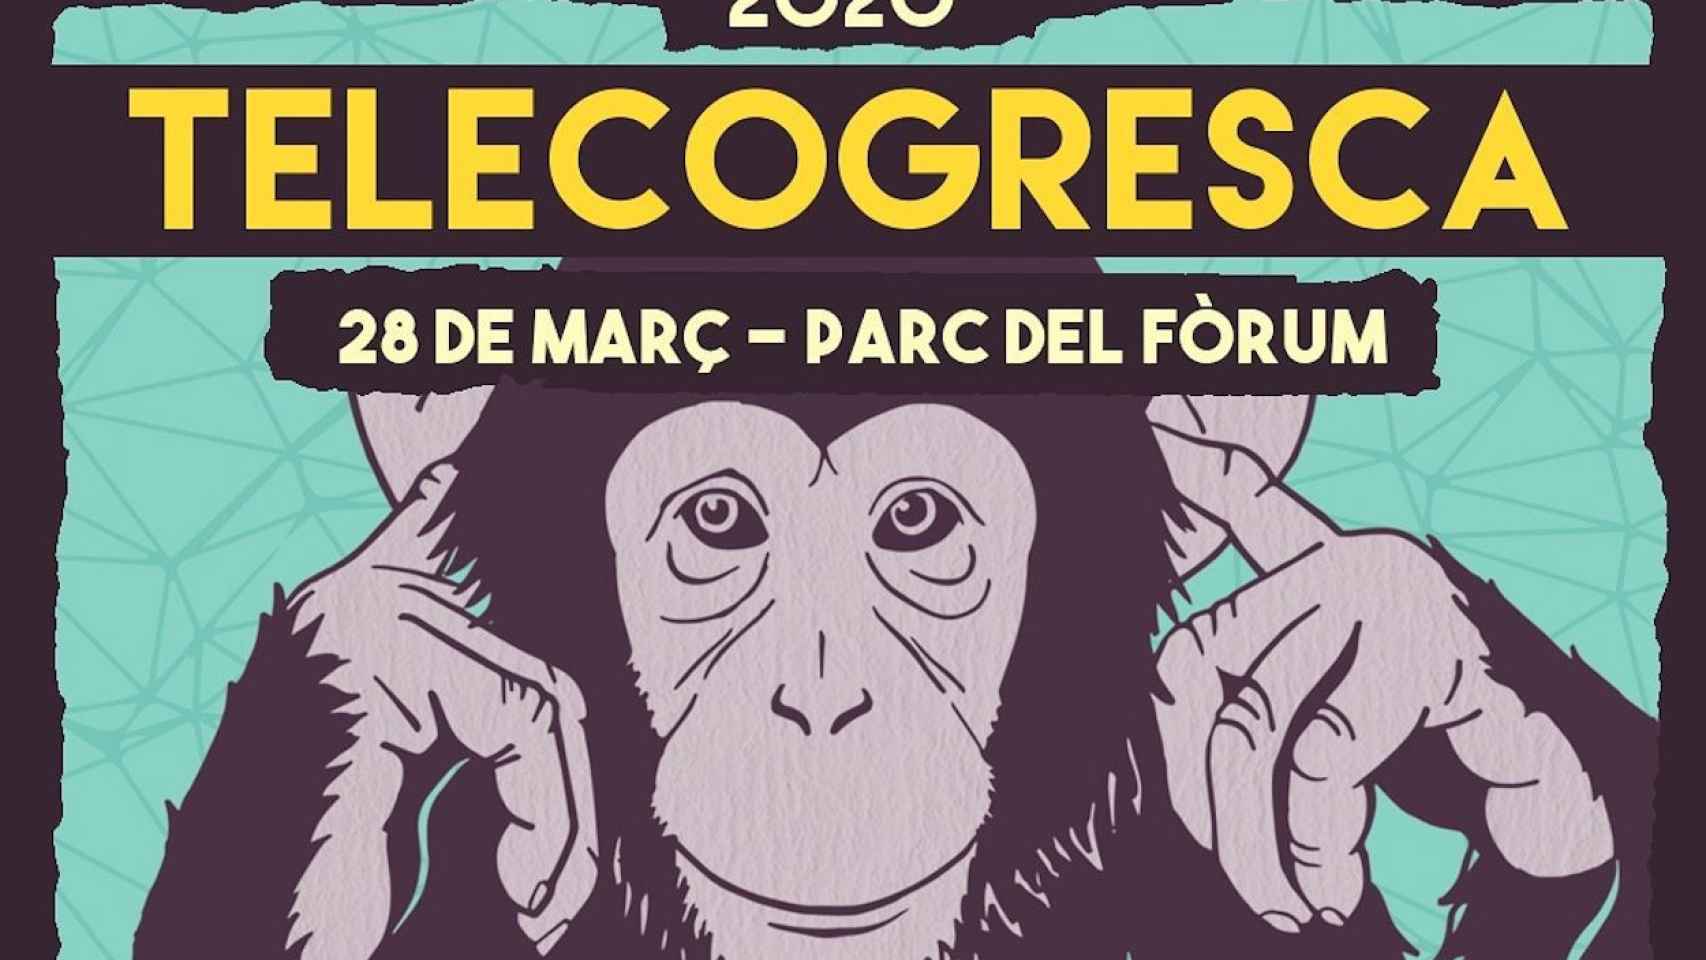 Cartel oficial de la Telecogresca 2020 en la que actuarán grupos como Los Chikos del Maíz y 31 FAM / TELECOGRESCA